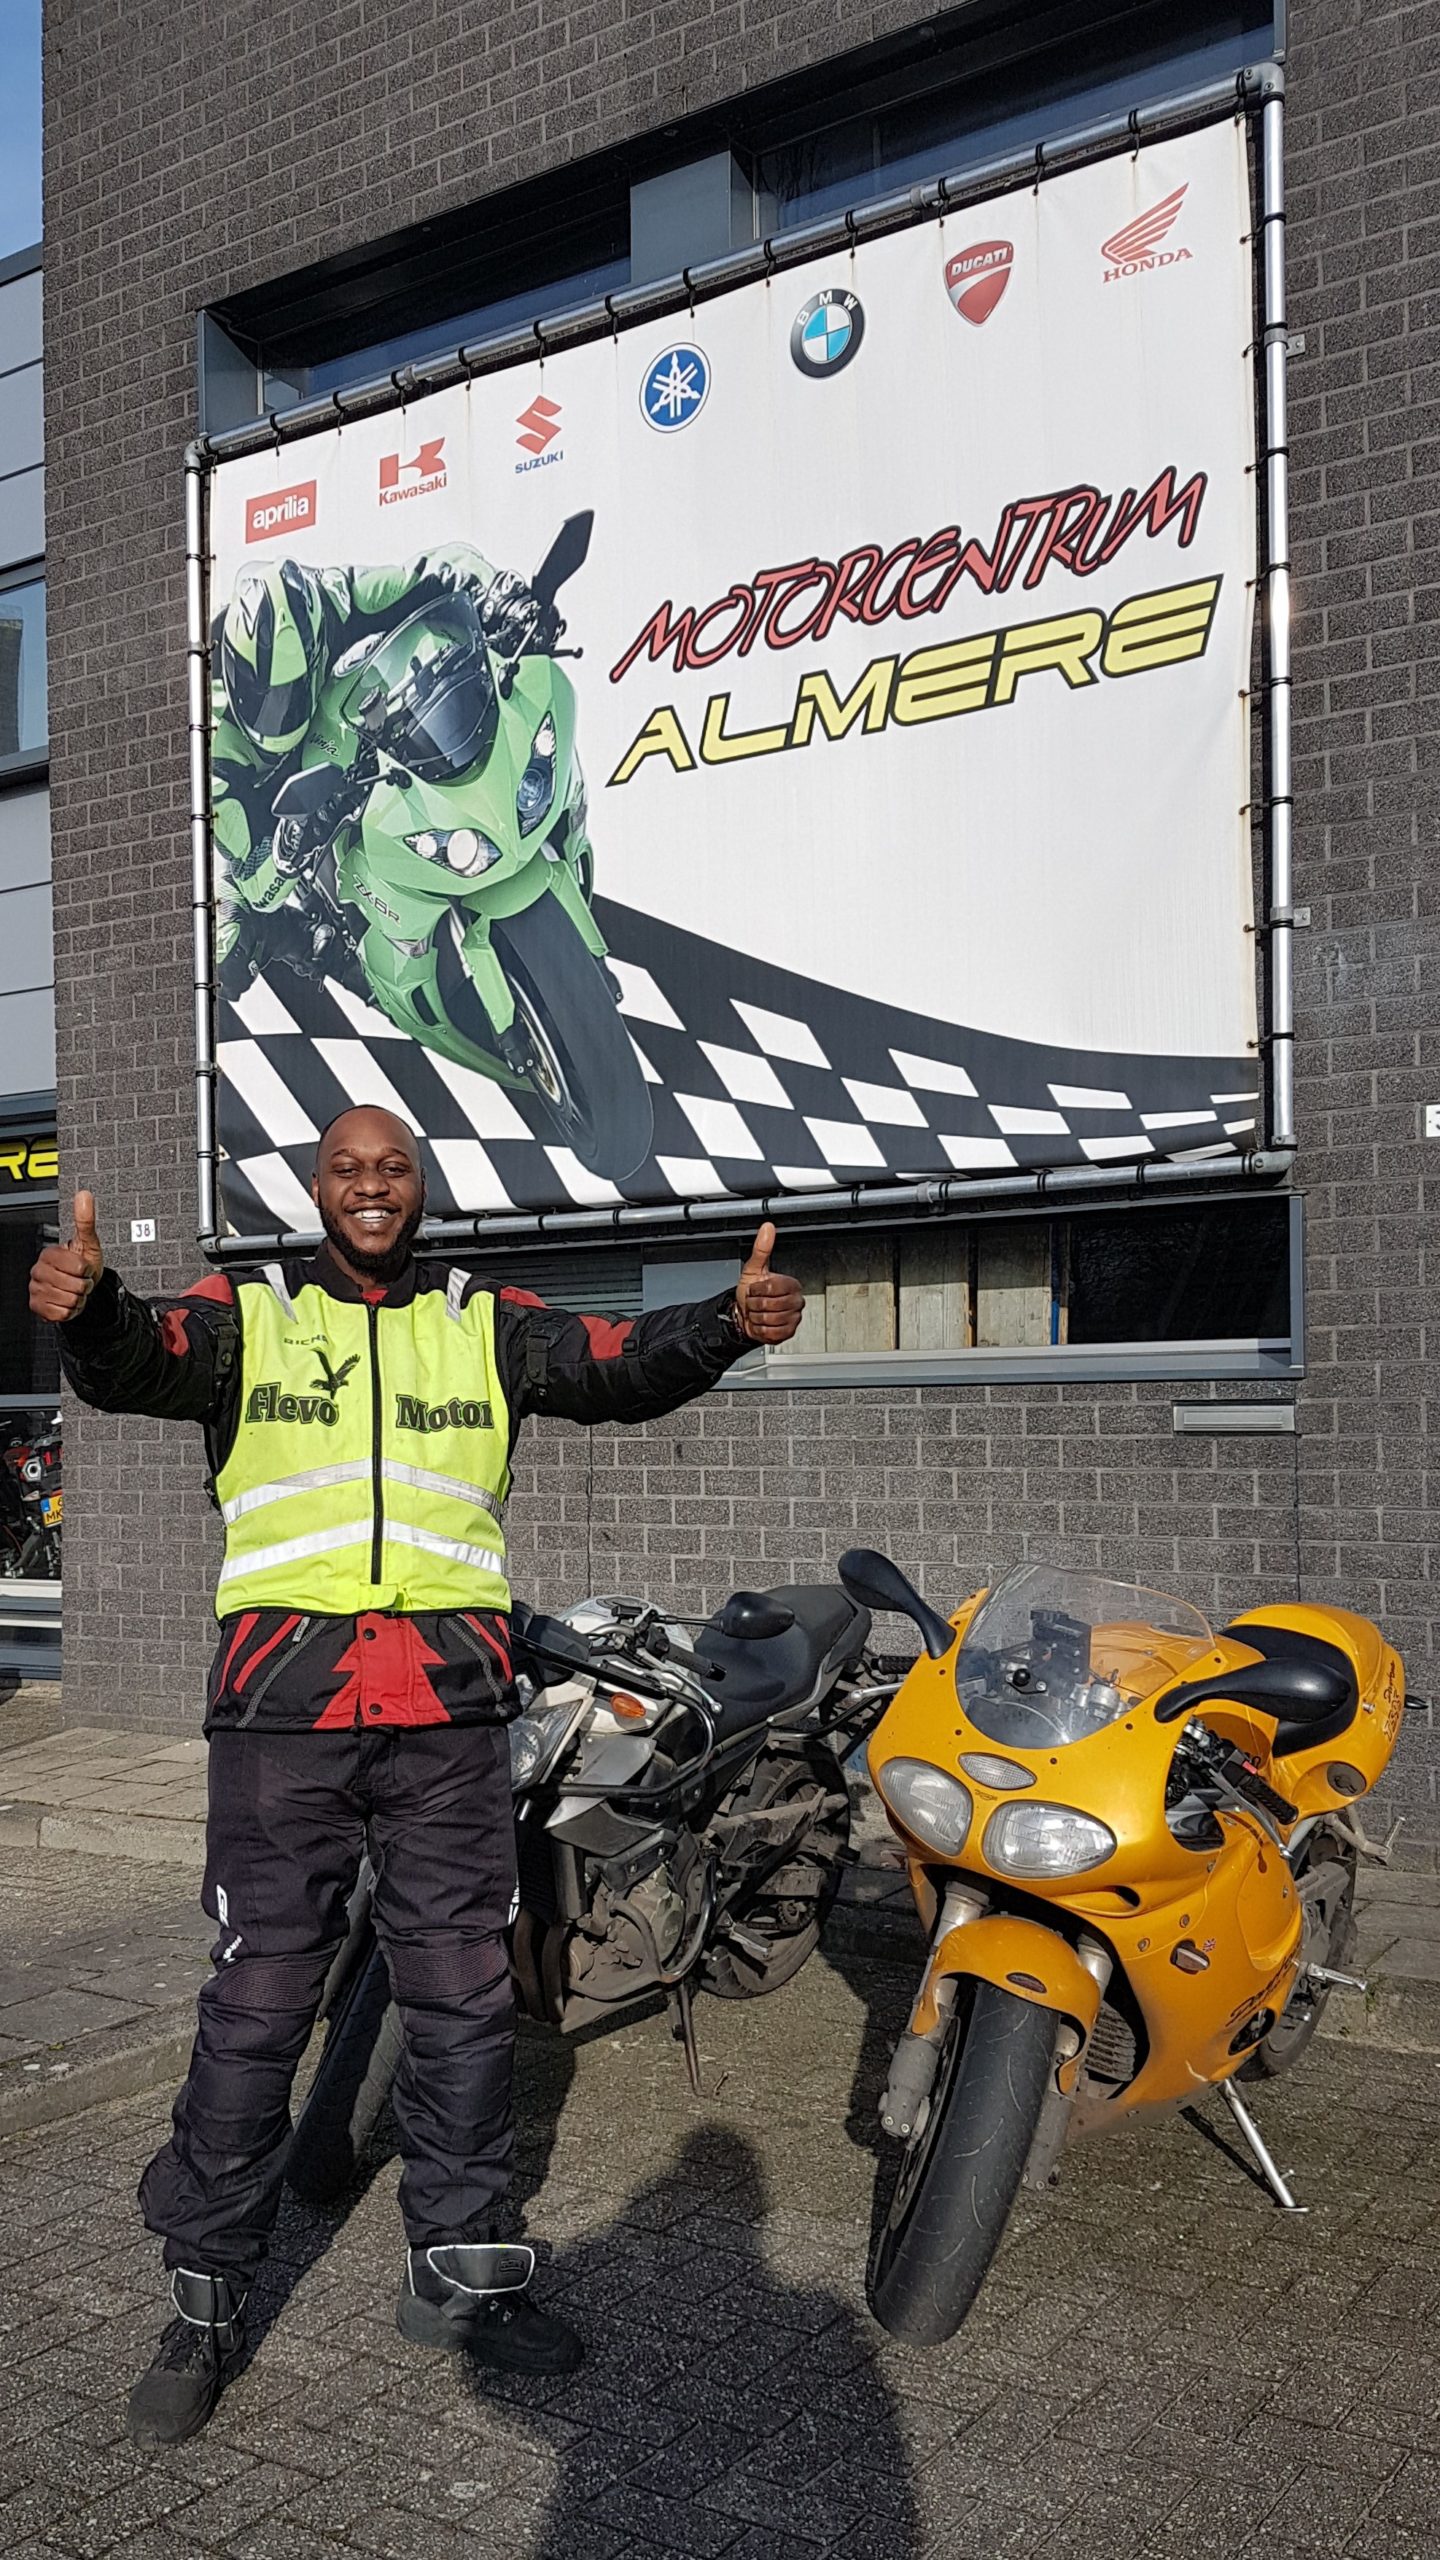 Motorrijles bij FlevoMotor de leukste motorrijschool in Almere ook voor leerlingen uit  Muiderberg Weesp Naarden!  Ook in een keer slagen voor je motorrijbewijs? Meld je snel aan voor een kennismakingsles!